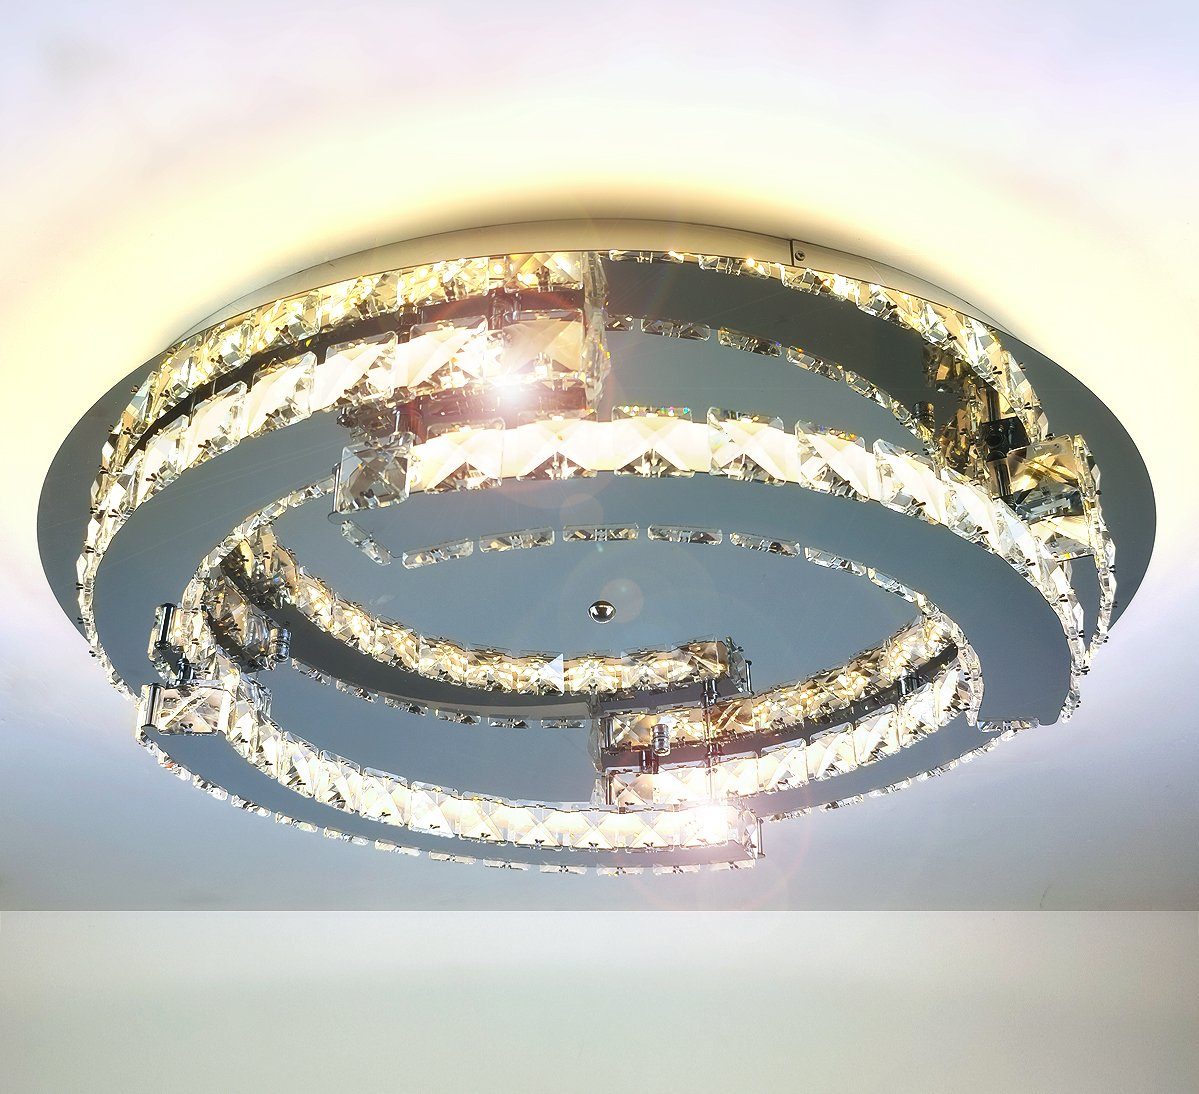 und Lewima groß Deckenlampe XXXL Silber verspiegelt einstellbar, Dimmbar Luxus / Kaltweiß 50-55W, »Schost«, Modern Design Warmweiß Fernbedienung Speicherfunktion inkl. Deckenleuchte LED rund, Ø60-80cm Kristall Glas